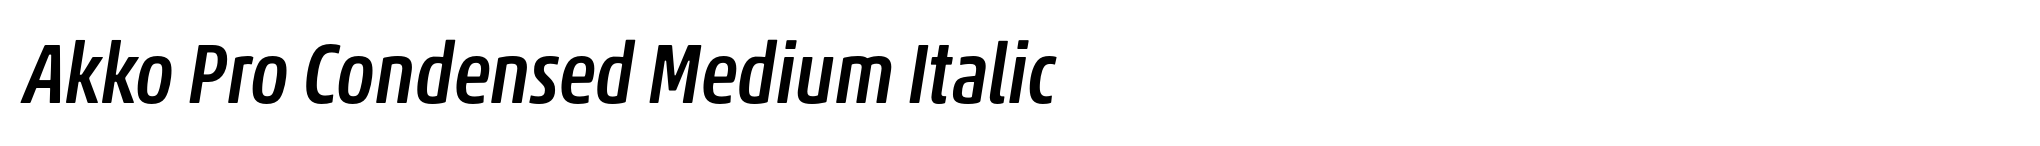 Akko Pro Condensed Medium Italic image